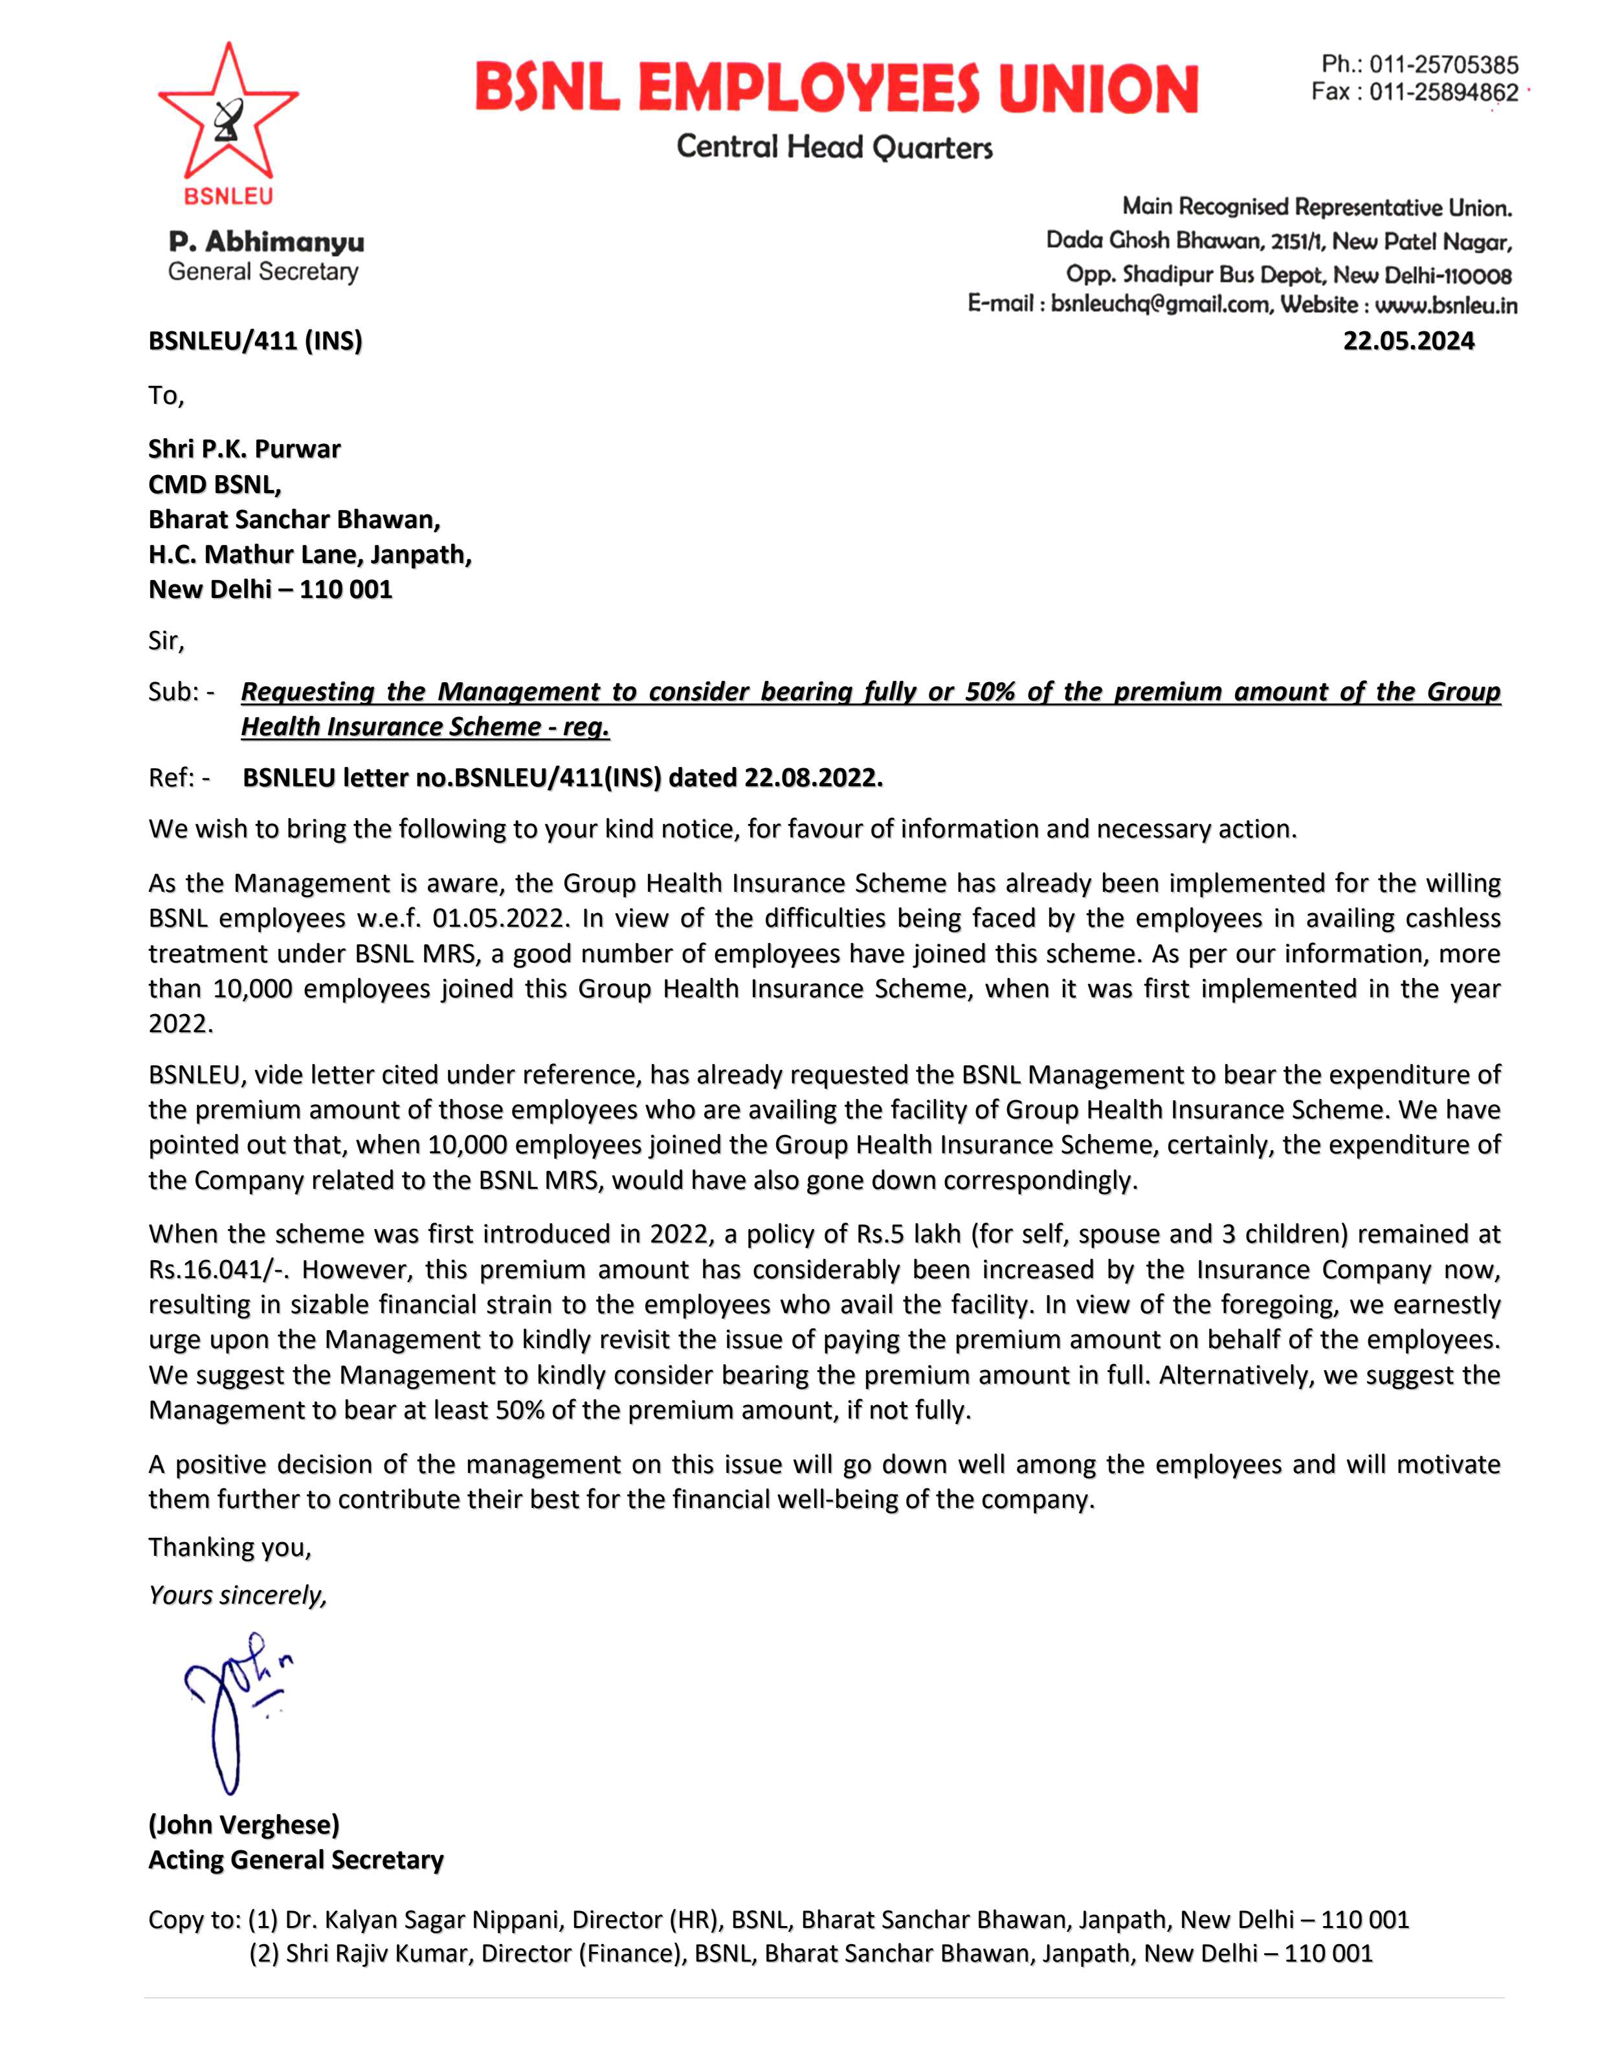 व्यवस्थापनाने समूह आरोग्य विमा प्रीमियम मध्ये कर्मचाऱ्यांची रक्कम BSNL ने भरावी : सीएमडी ना बीएसएनएल इ यु ने पत्र लिहिले. Image 